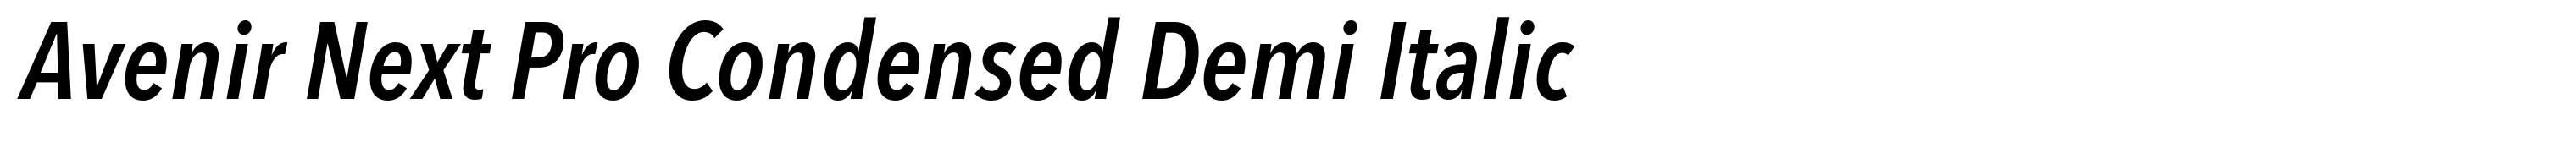 Avenir Next Pro Condensed Demi Italic